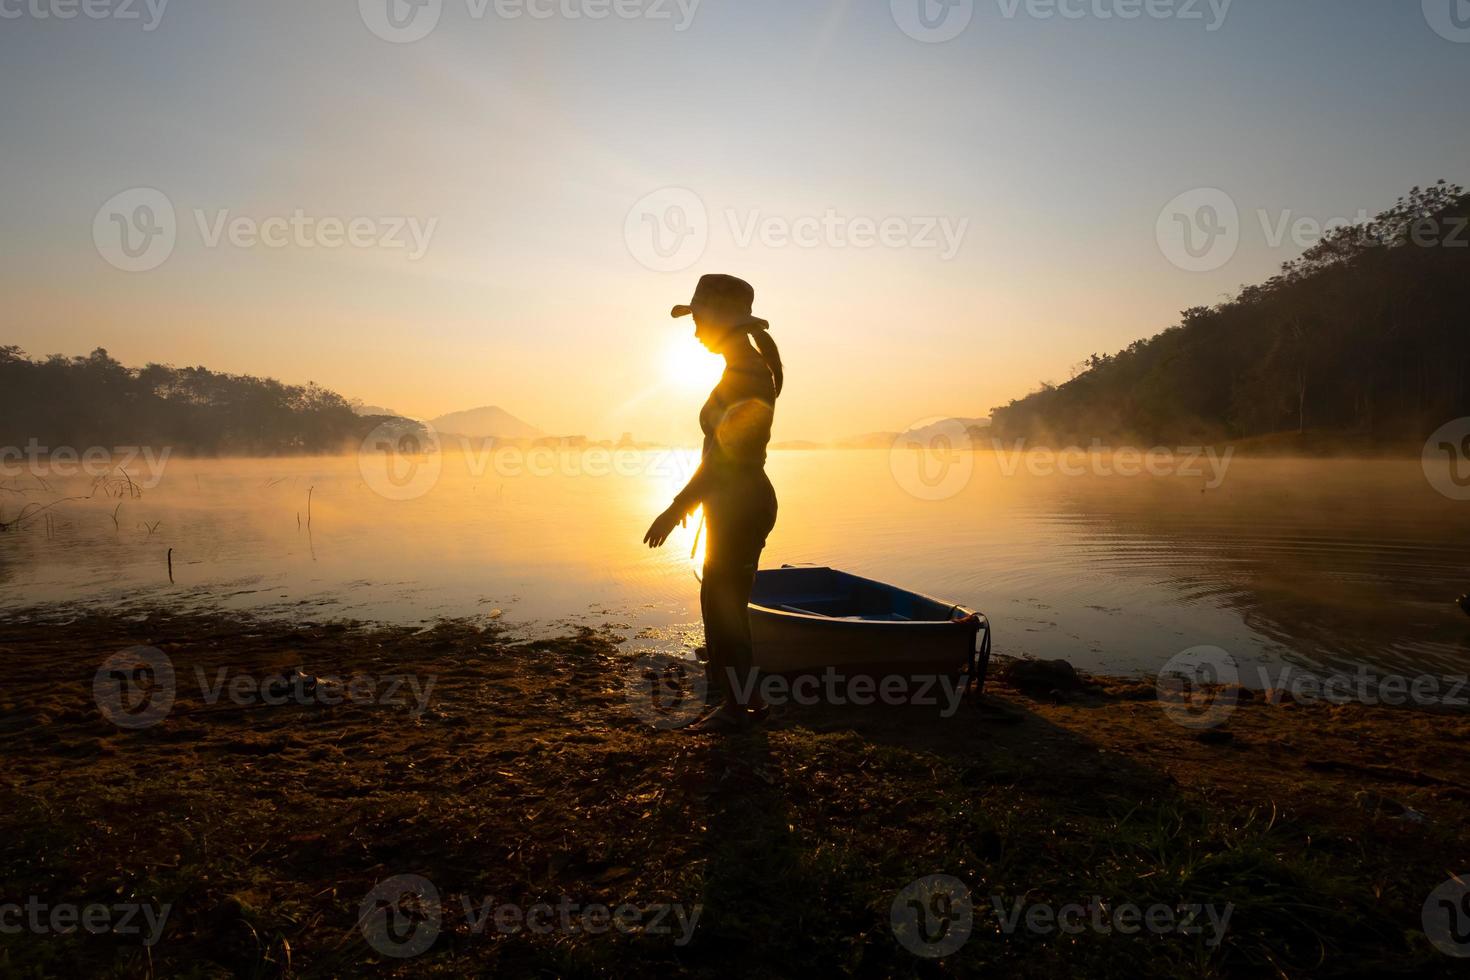 Dames staand naast een boot naar de kust Bij de reservoir gedurende de zonsopkomst, harak Woud park huai naam Mens reservoir loei Thailand 21 jan 2023 foto